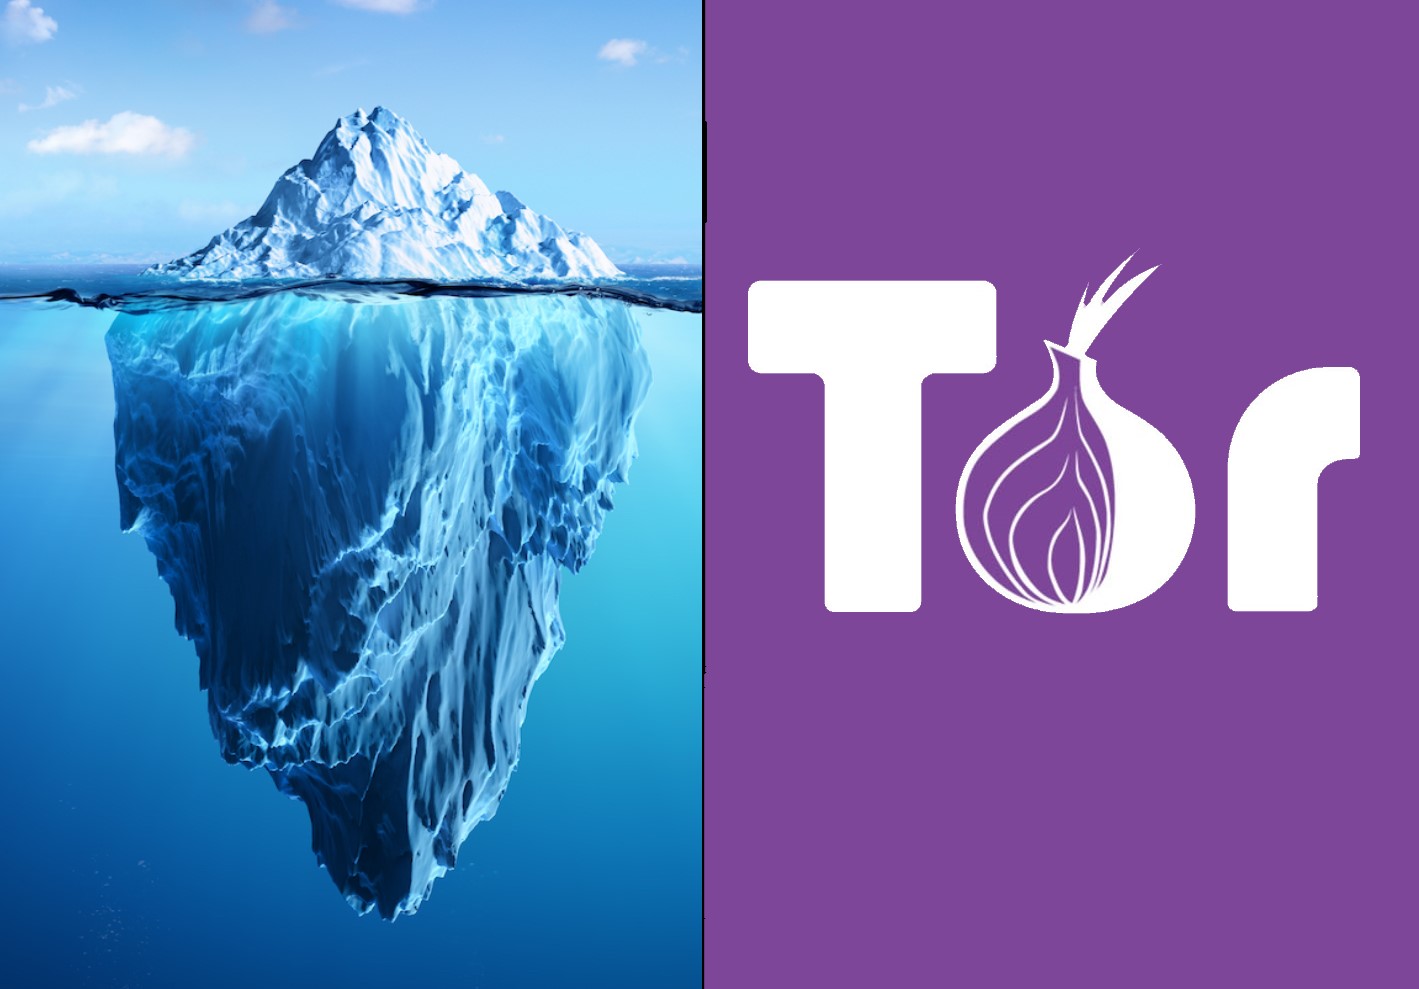 Tor darknet markets